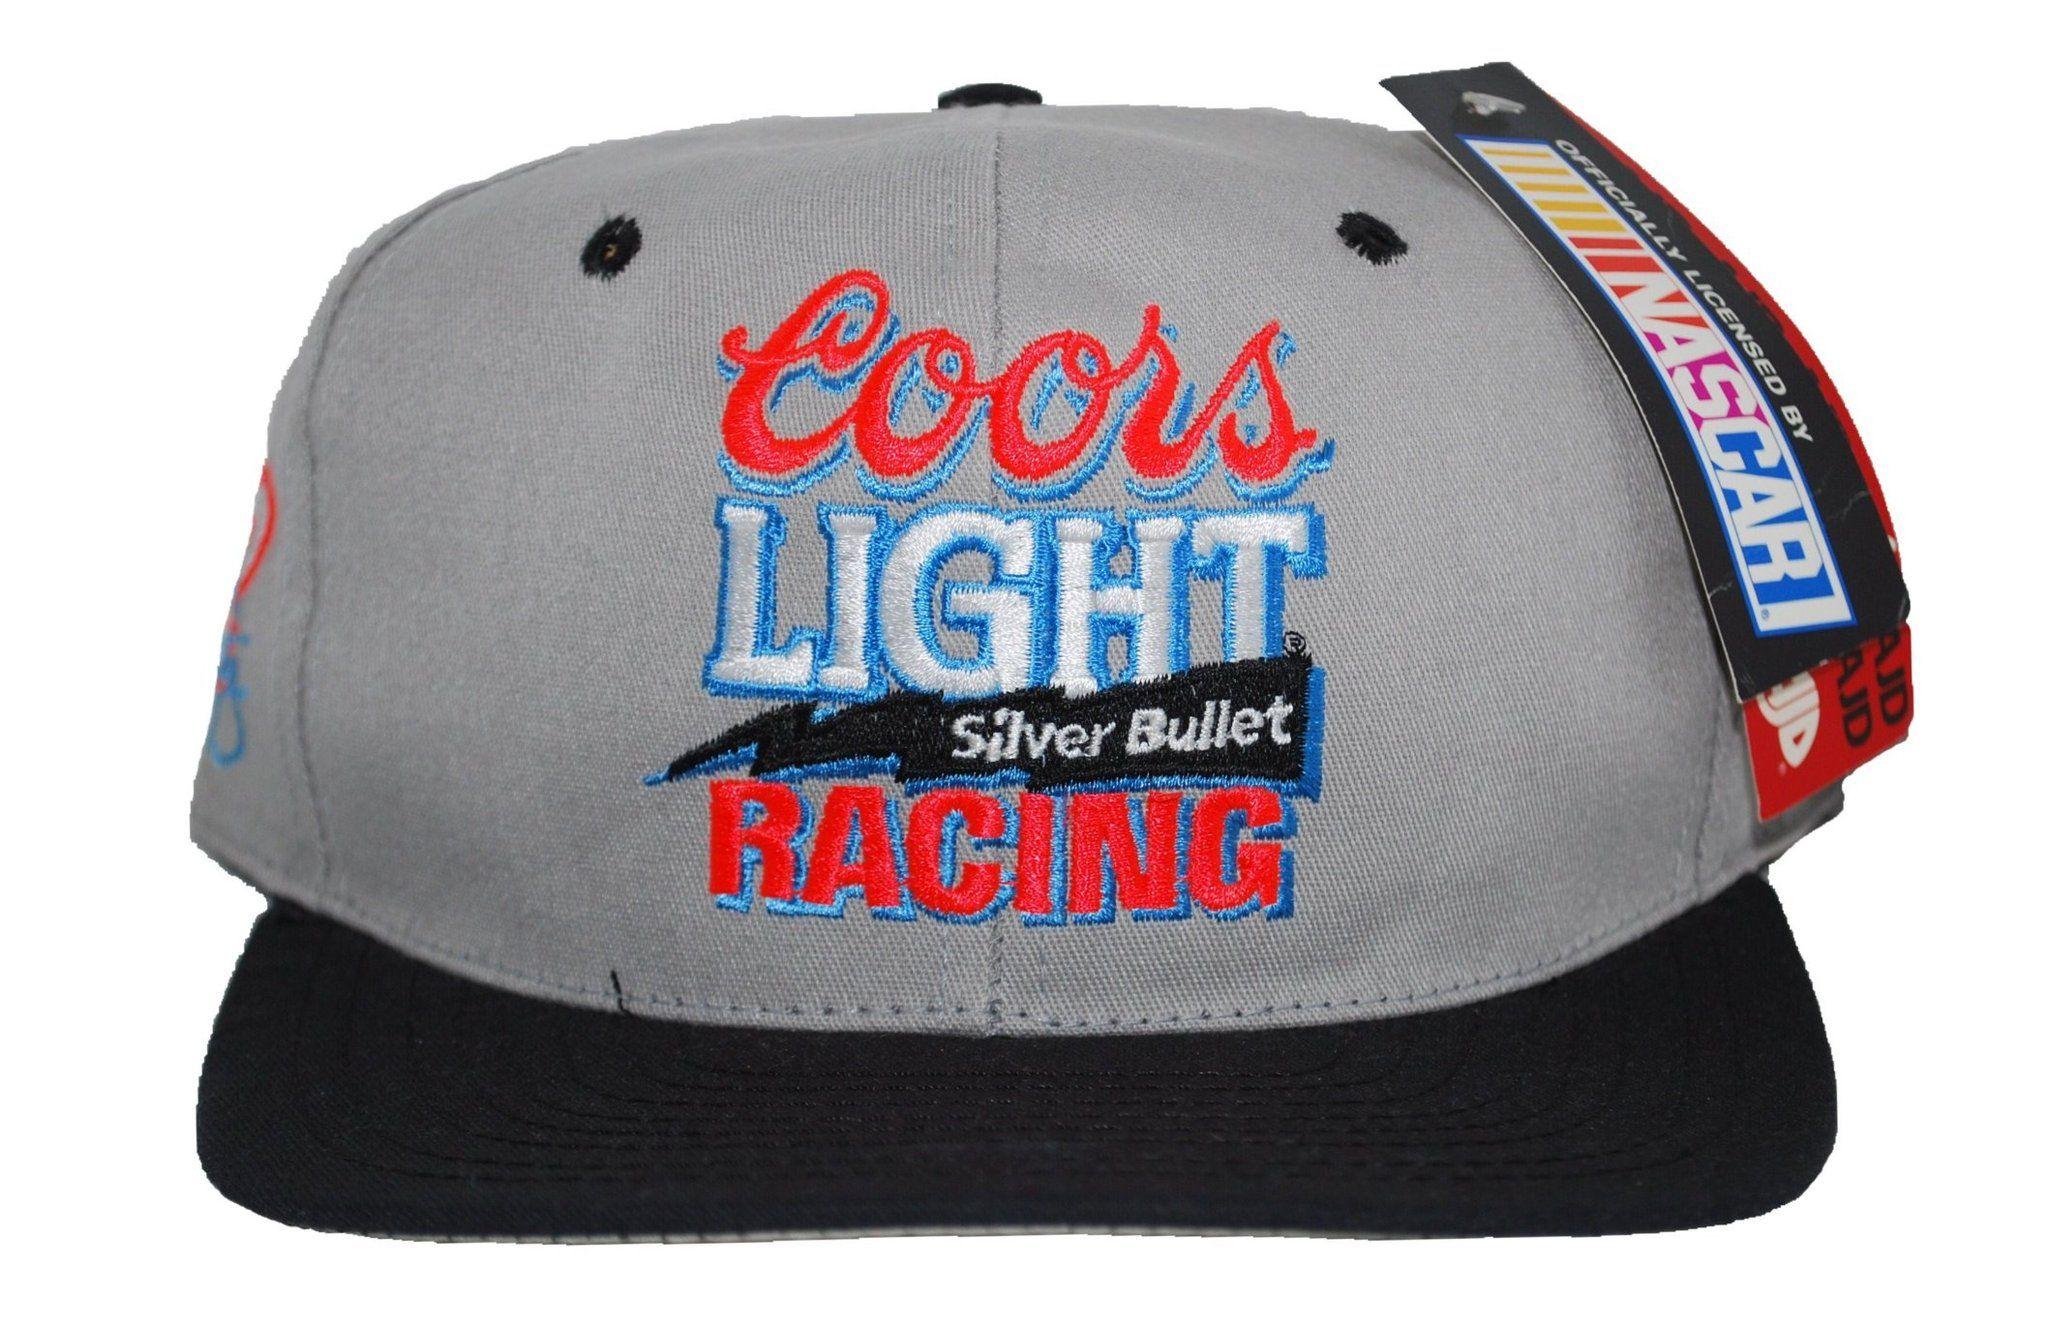 Coors Light Racing Logo - Coors Light Racing